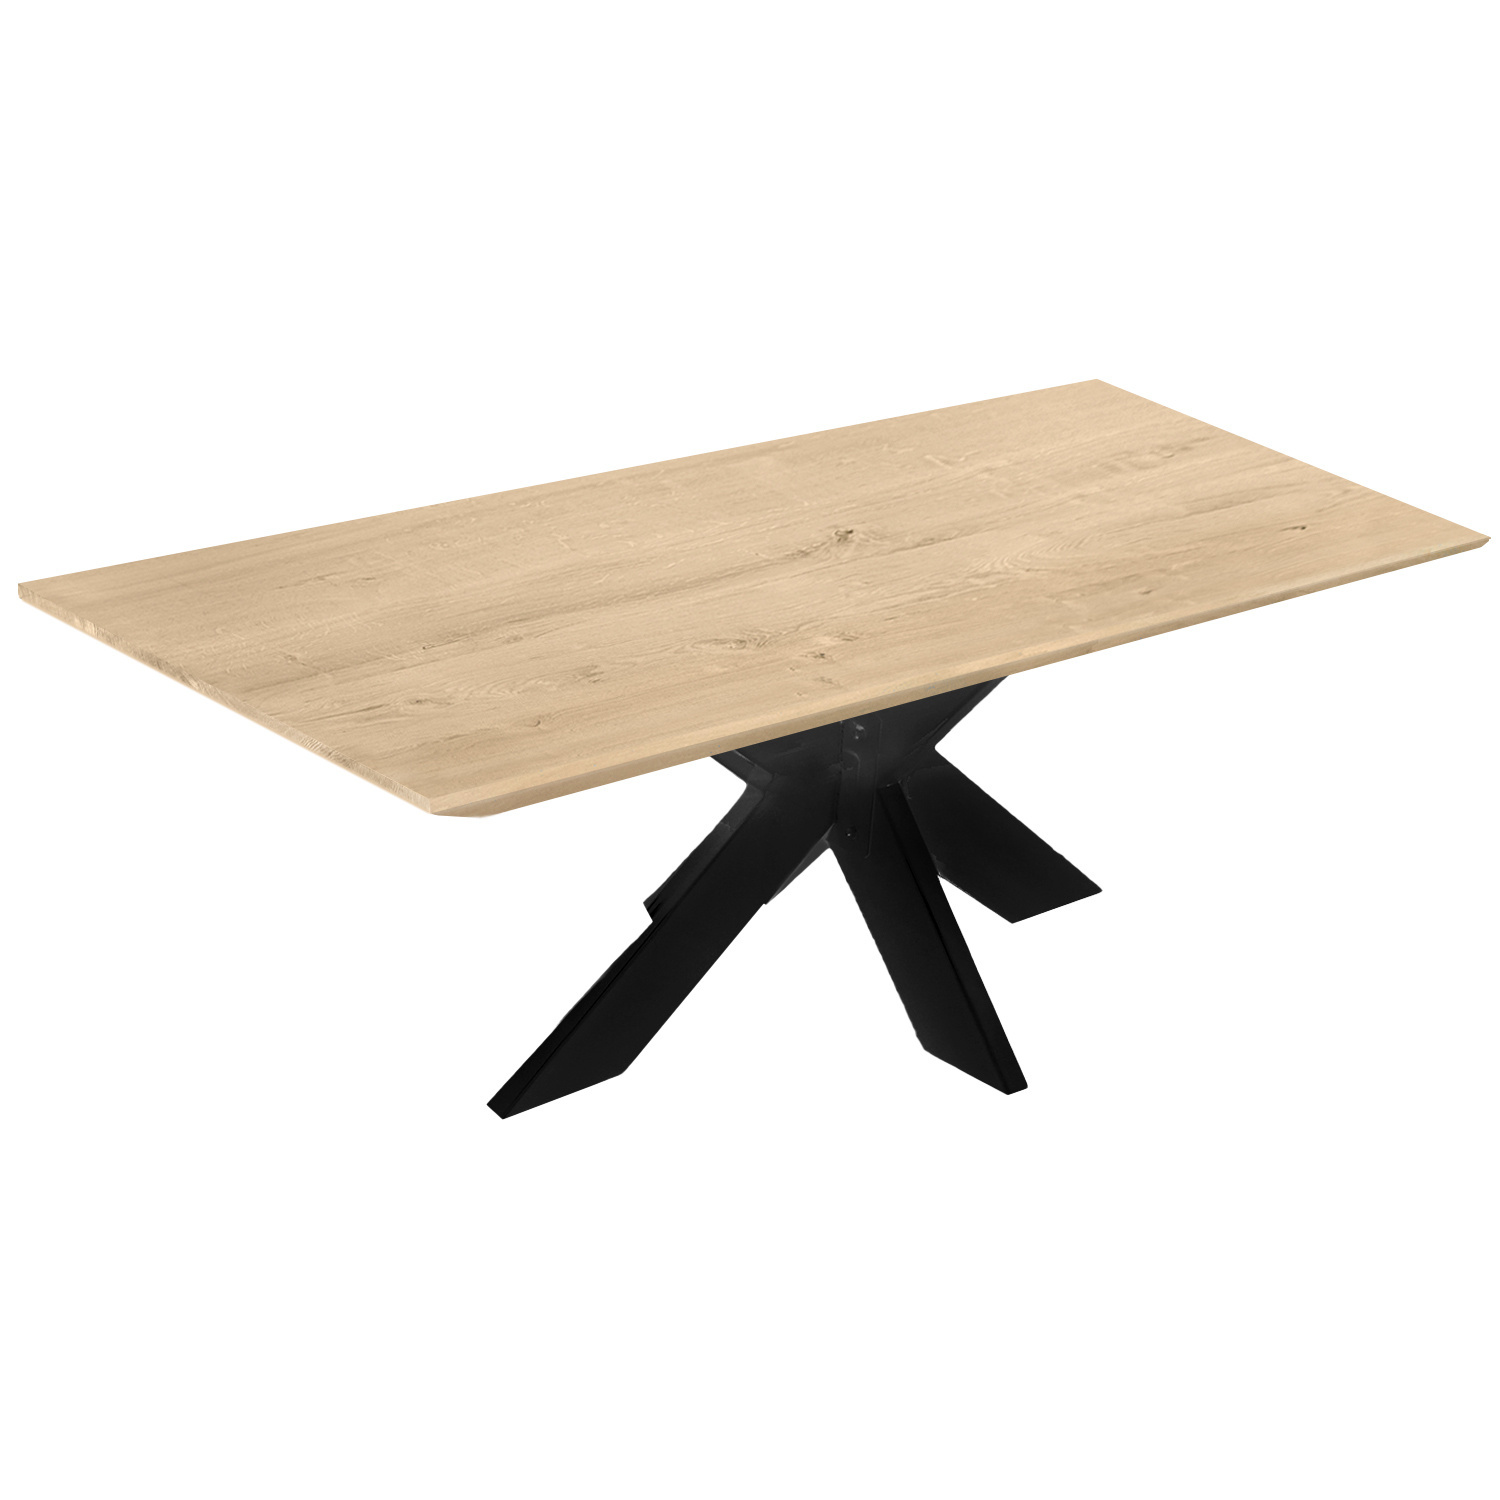  Eiken tafelblad met verjongde rand - 4 cm dik (1-laag) - Diverse afmetingen - extra rustiek Europees eikenhout - met extra brede lamellen (circa 14-20 cm) - verlijmd kd 8-12%